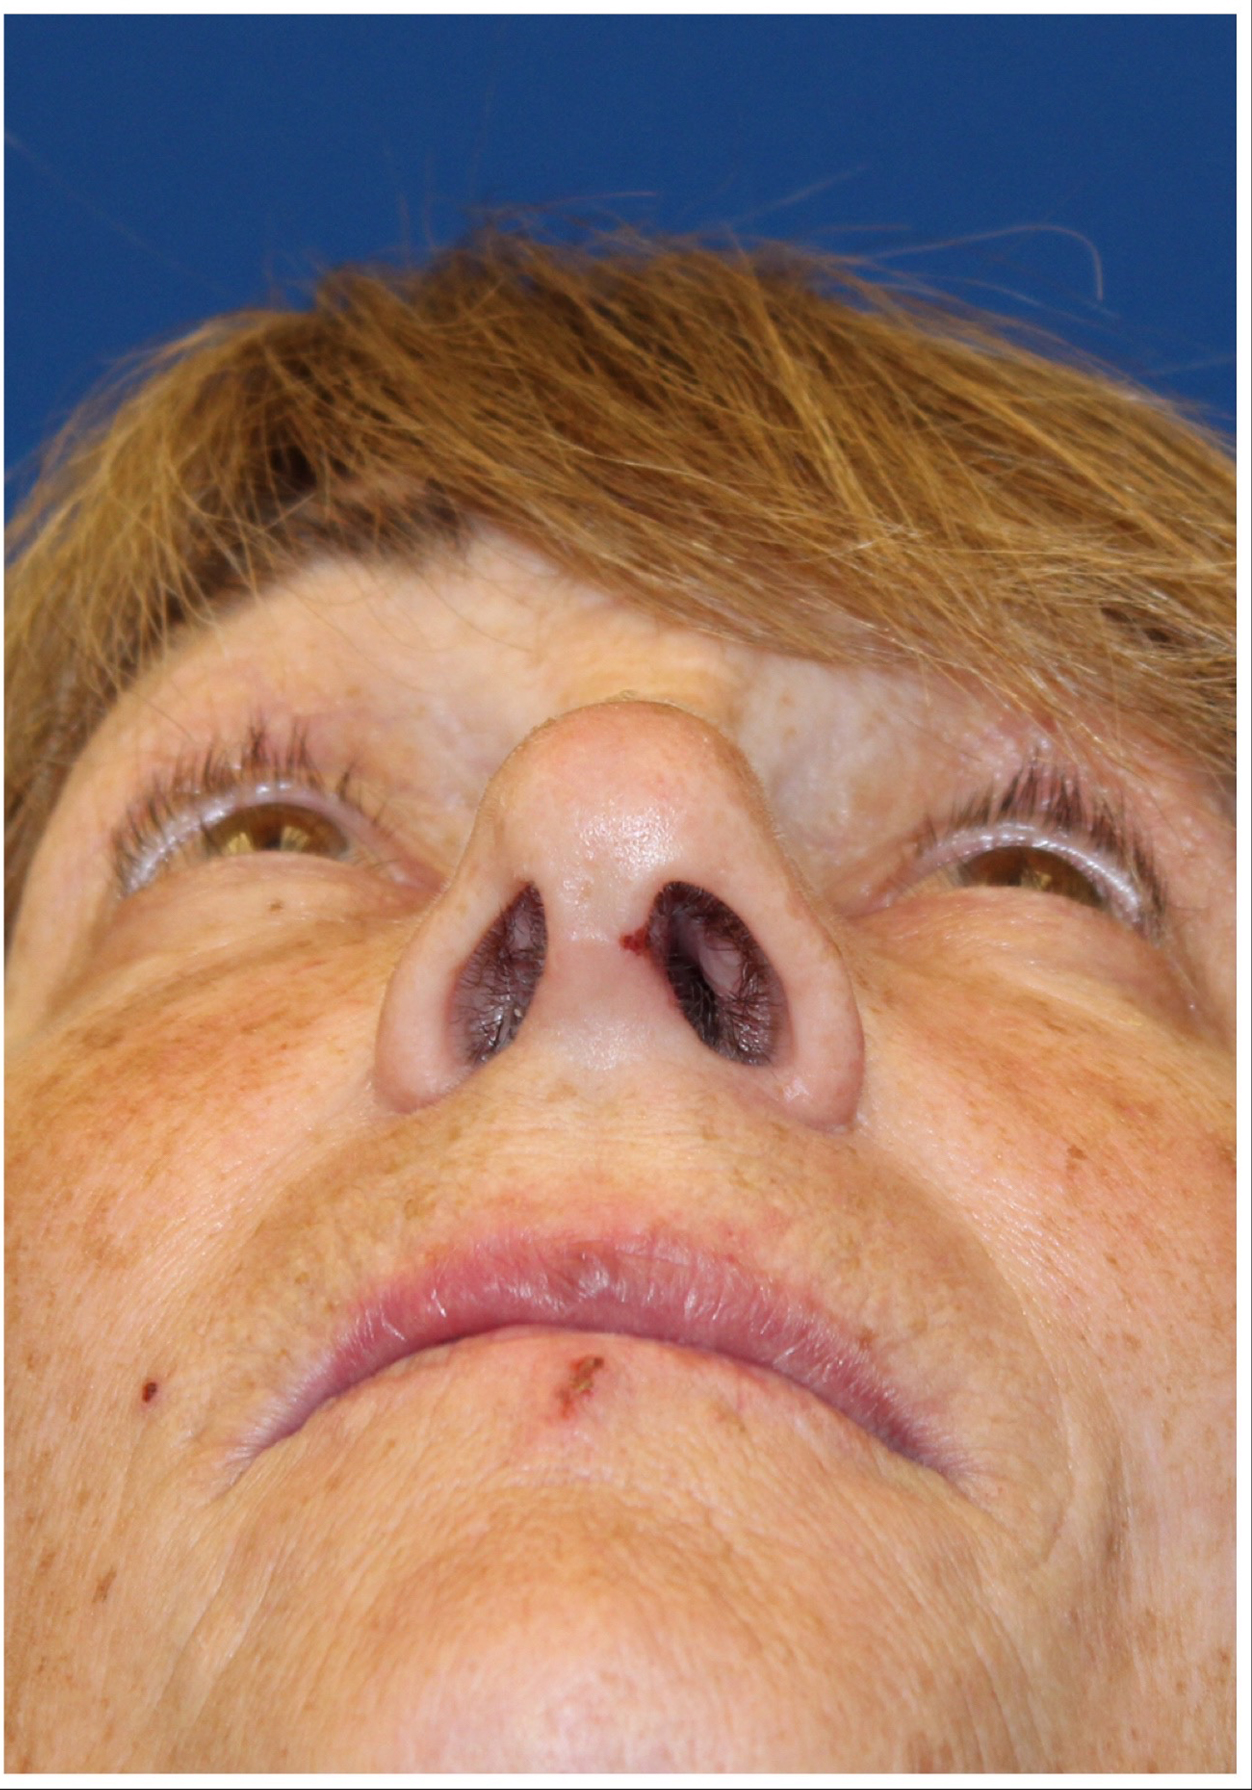 Female Cosmetic Rhinoplasty